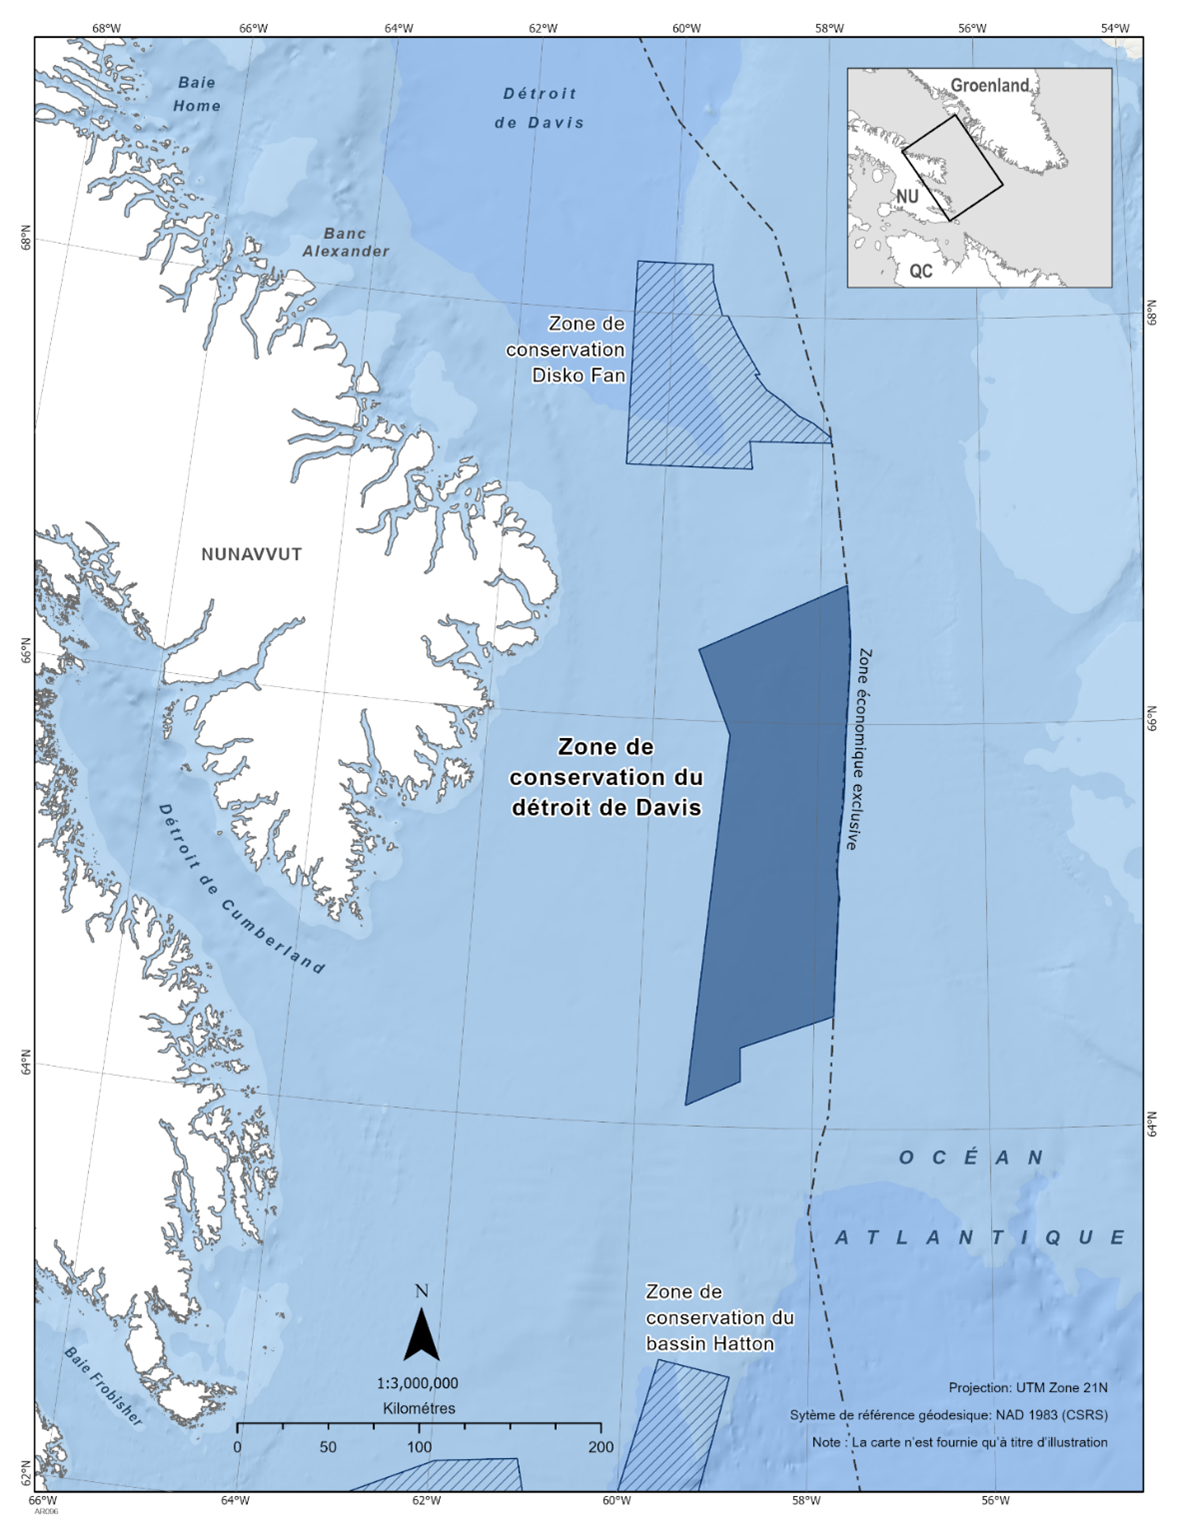 Carte de la zone de conservation du détroit de Davis en bleu foncé. La carte présente également d'autres refuges marins à proximité avec des lignes diagonales bleu foncé (zone de conservation de Disko Fan et zone de conservation de Hatton Basin). 